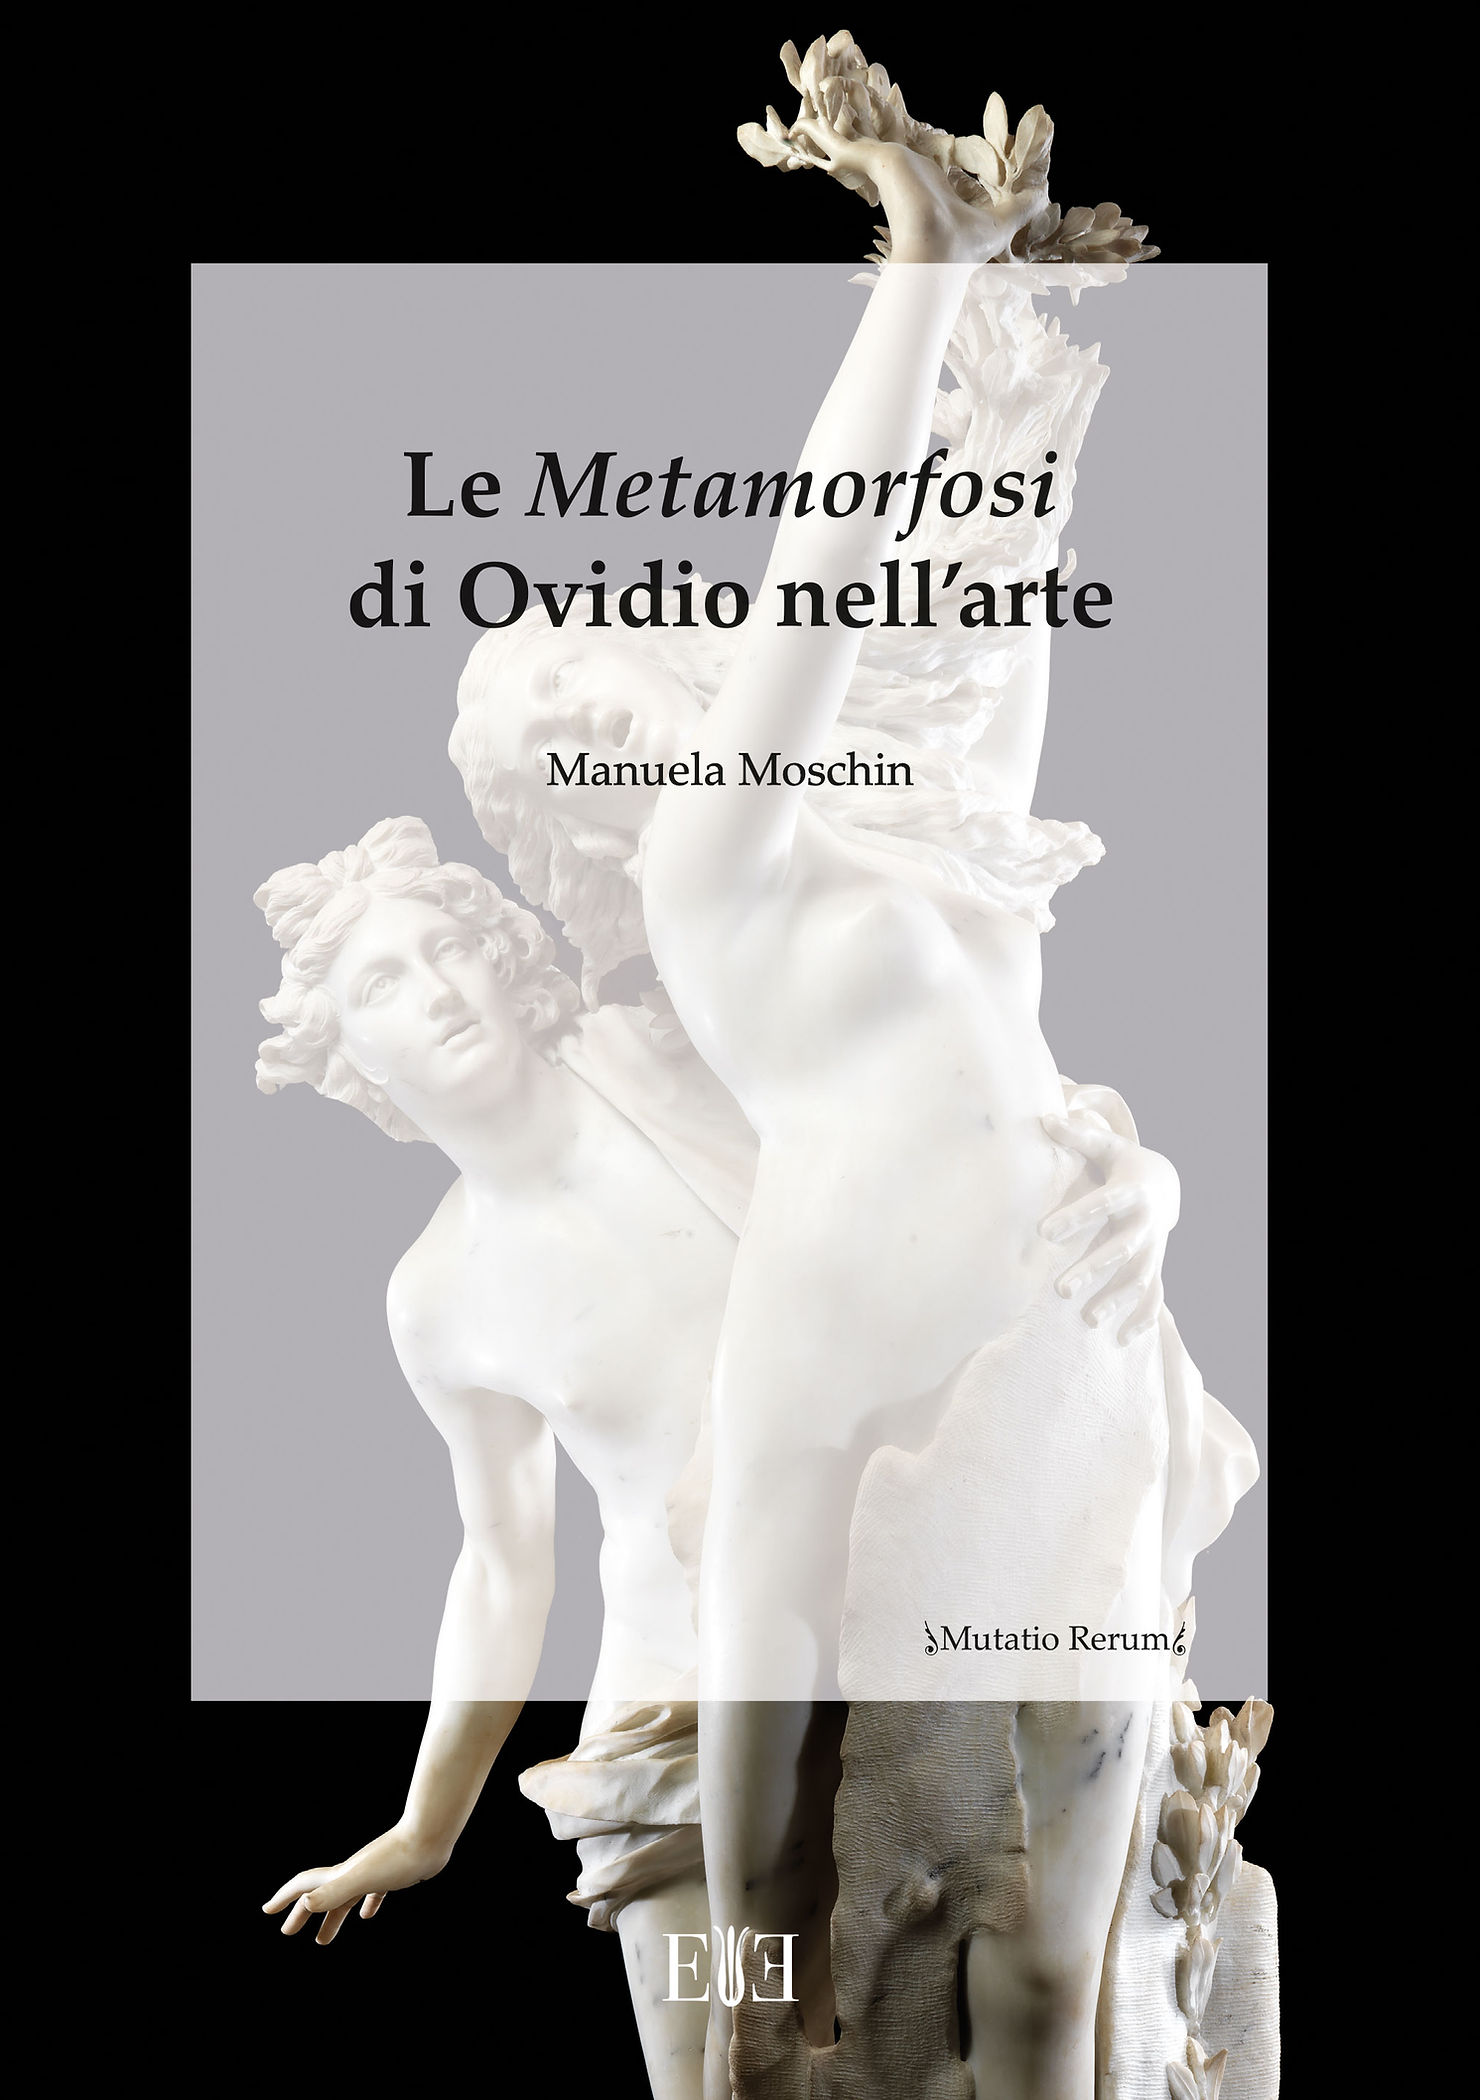 Metamorfosi di Ovidio nell'arte